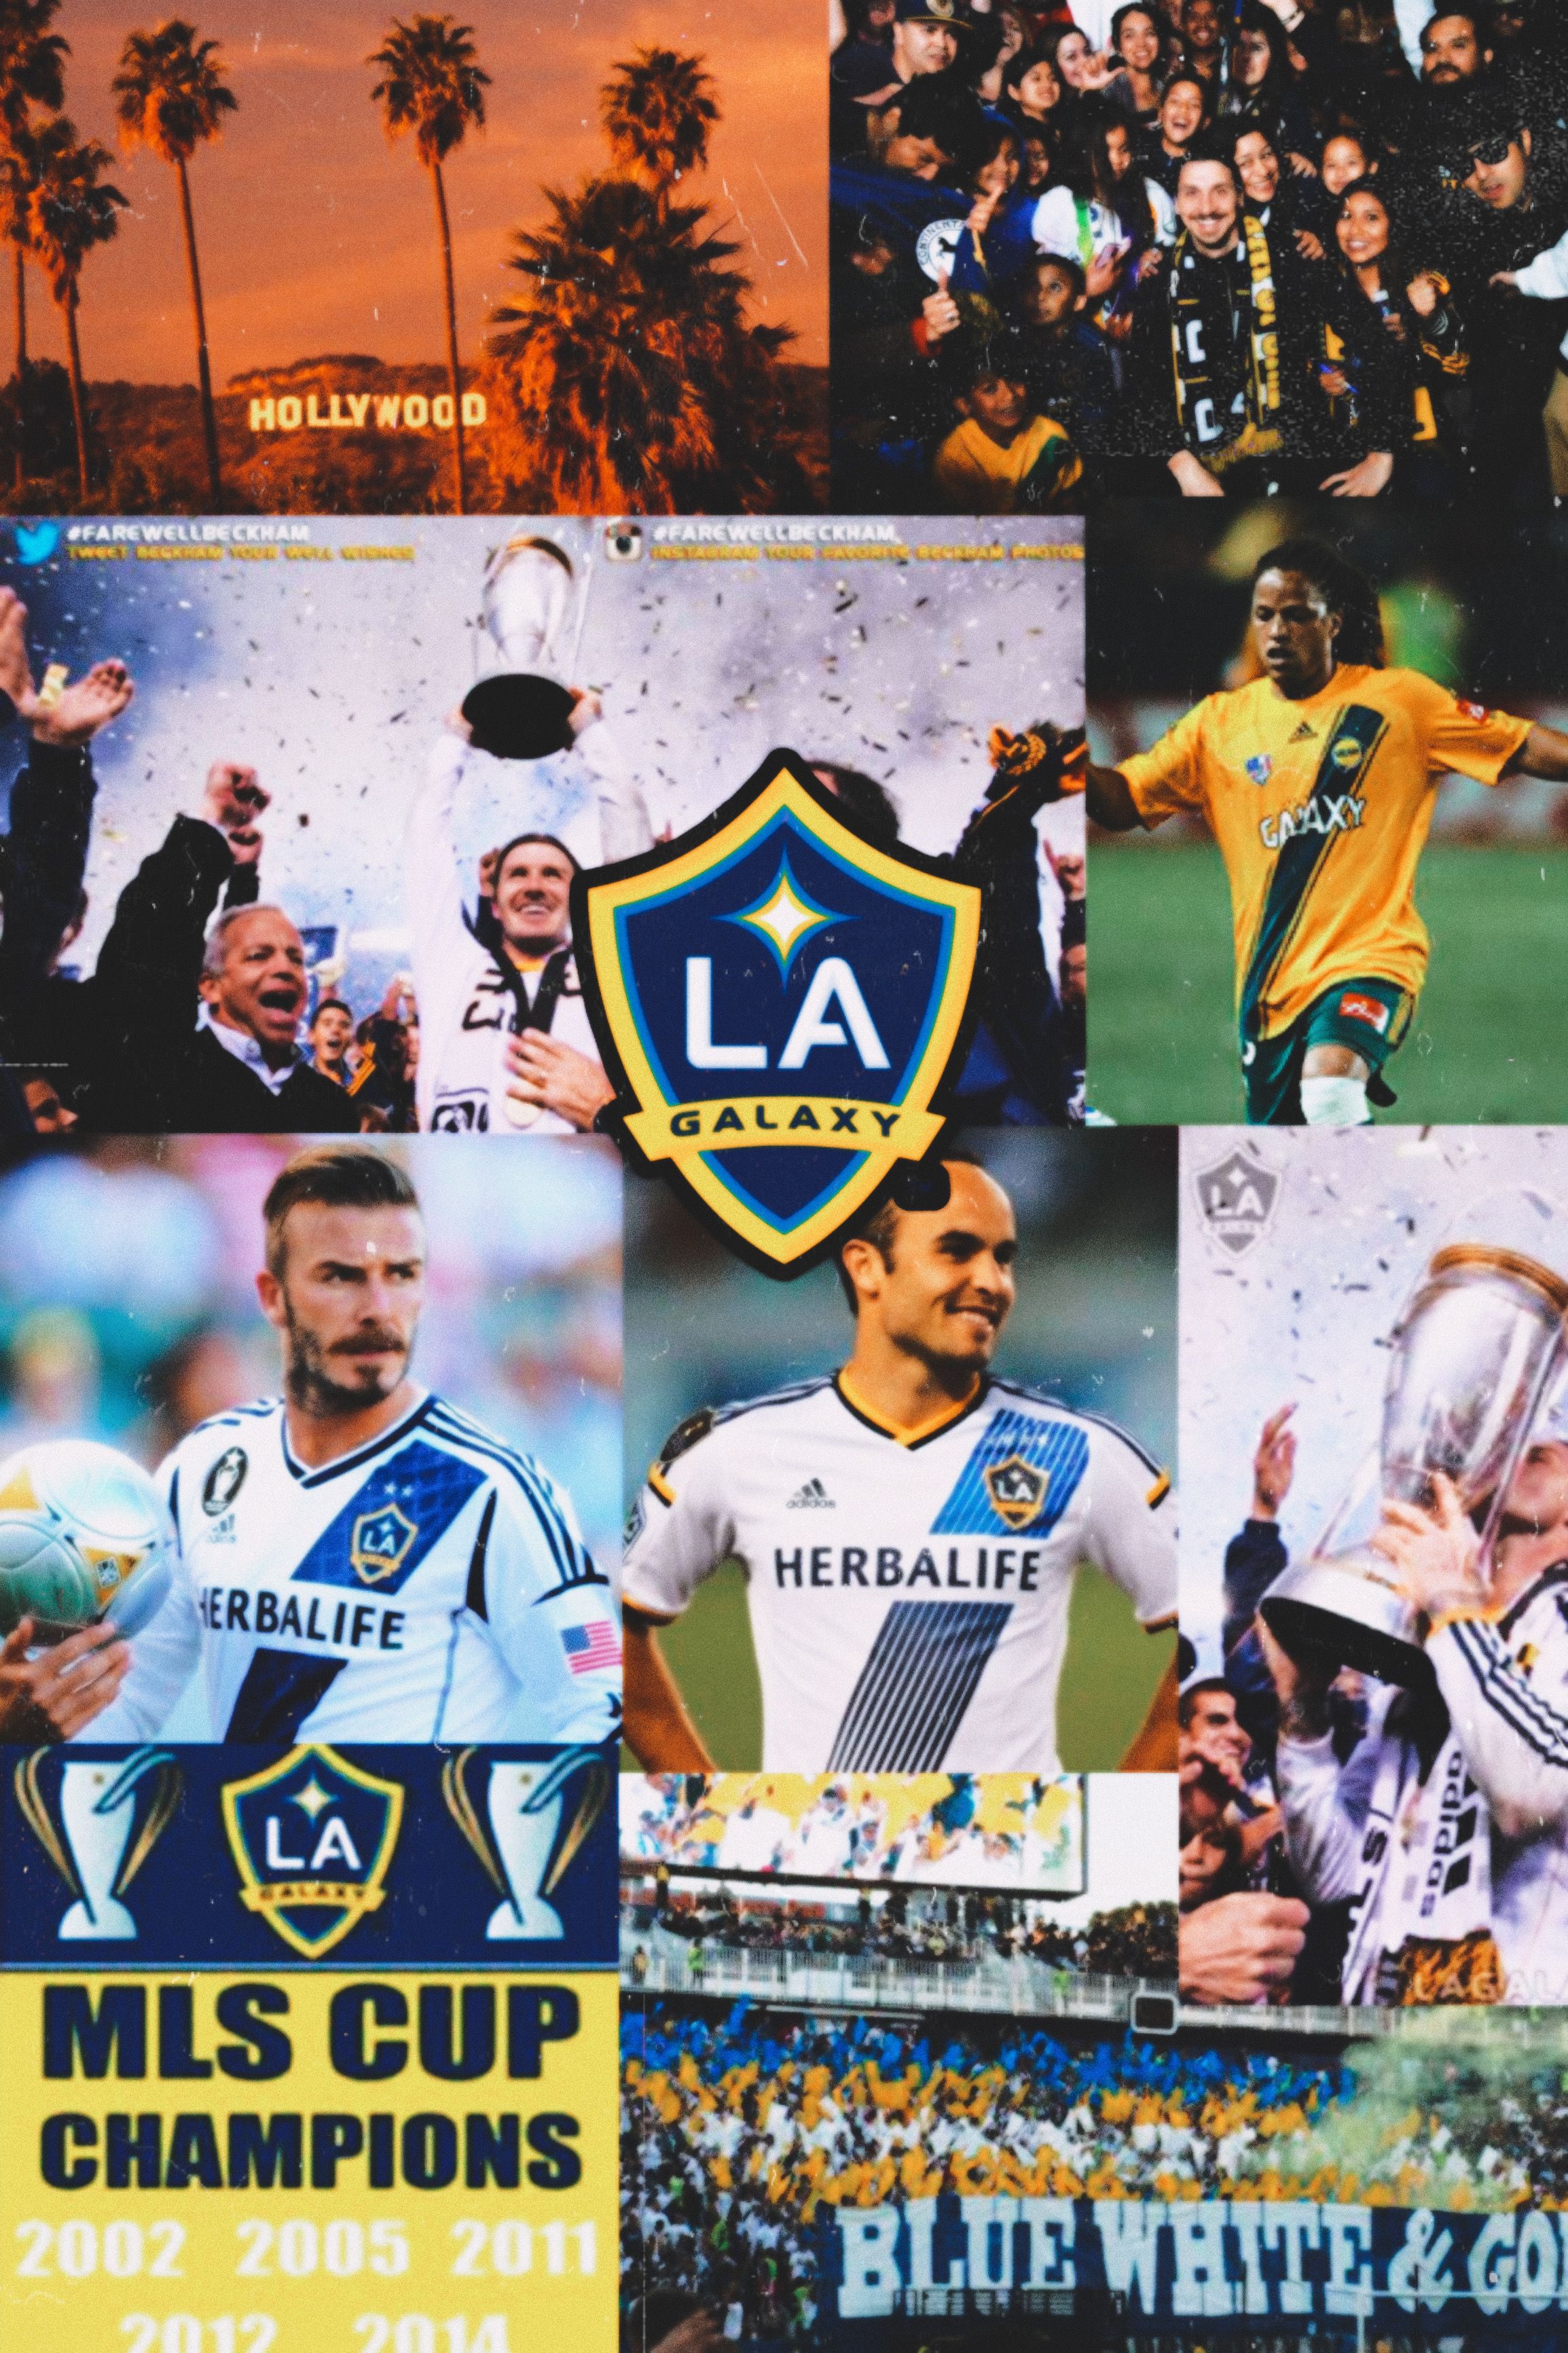 Los Angeles Galaxy. Major league soccer, Football club, La galaxy